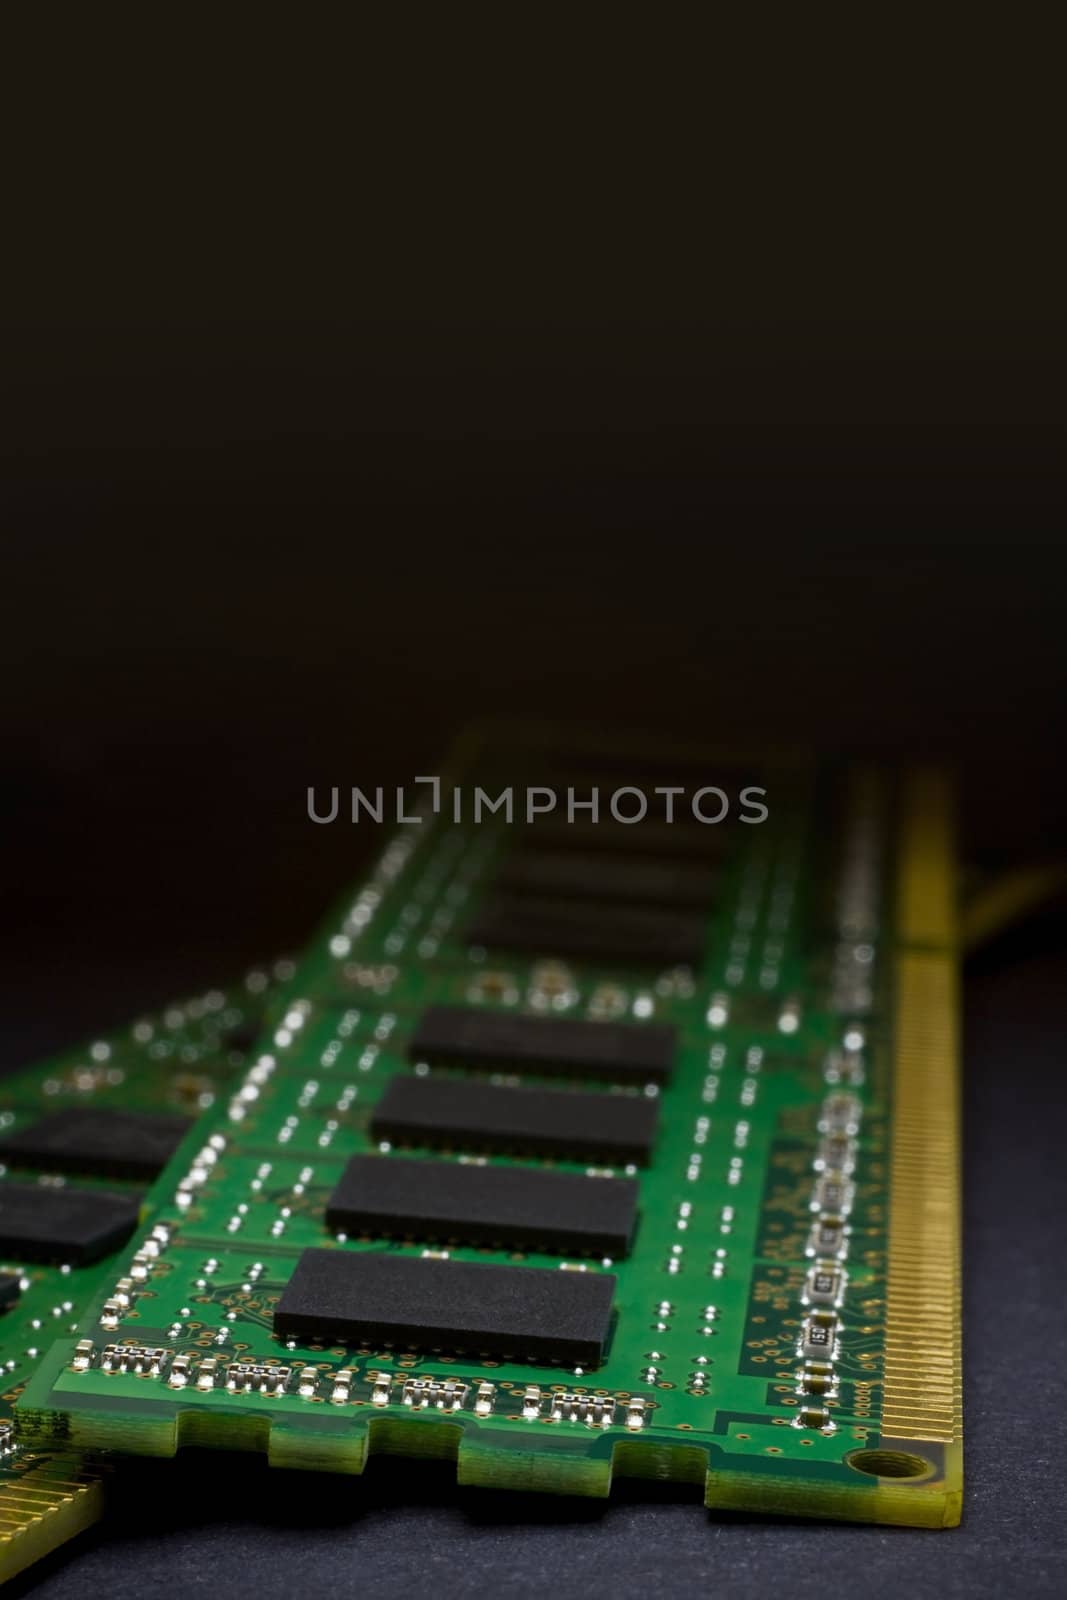 RAM in  close-up by gewoldi